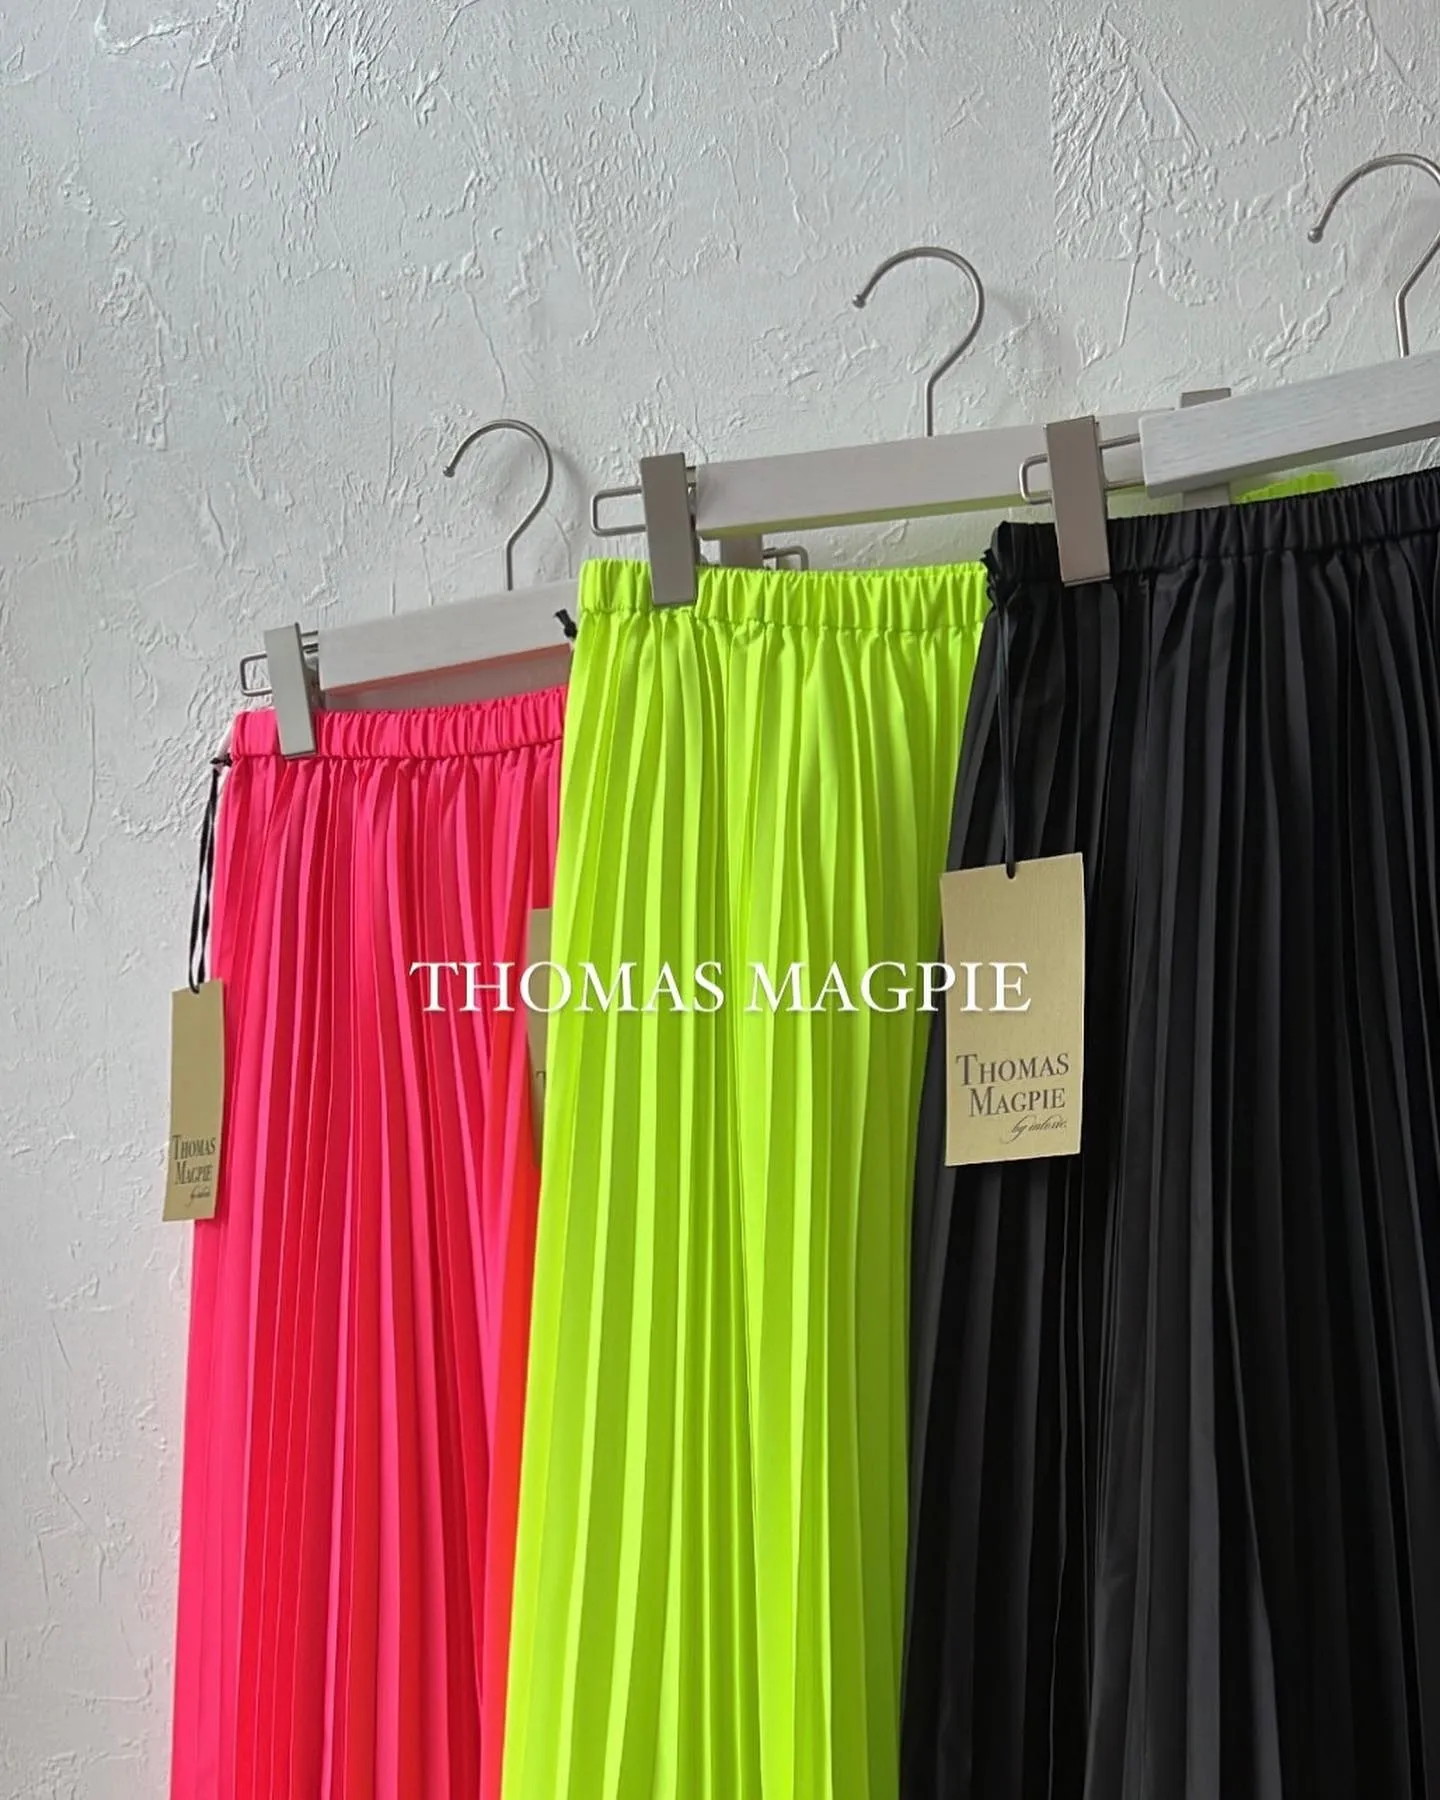 neon pleats skirt